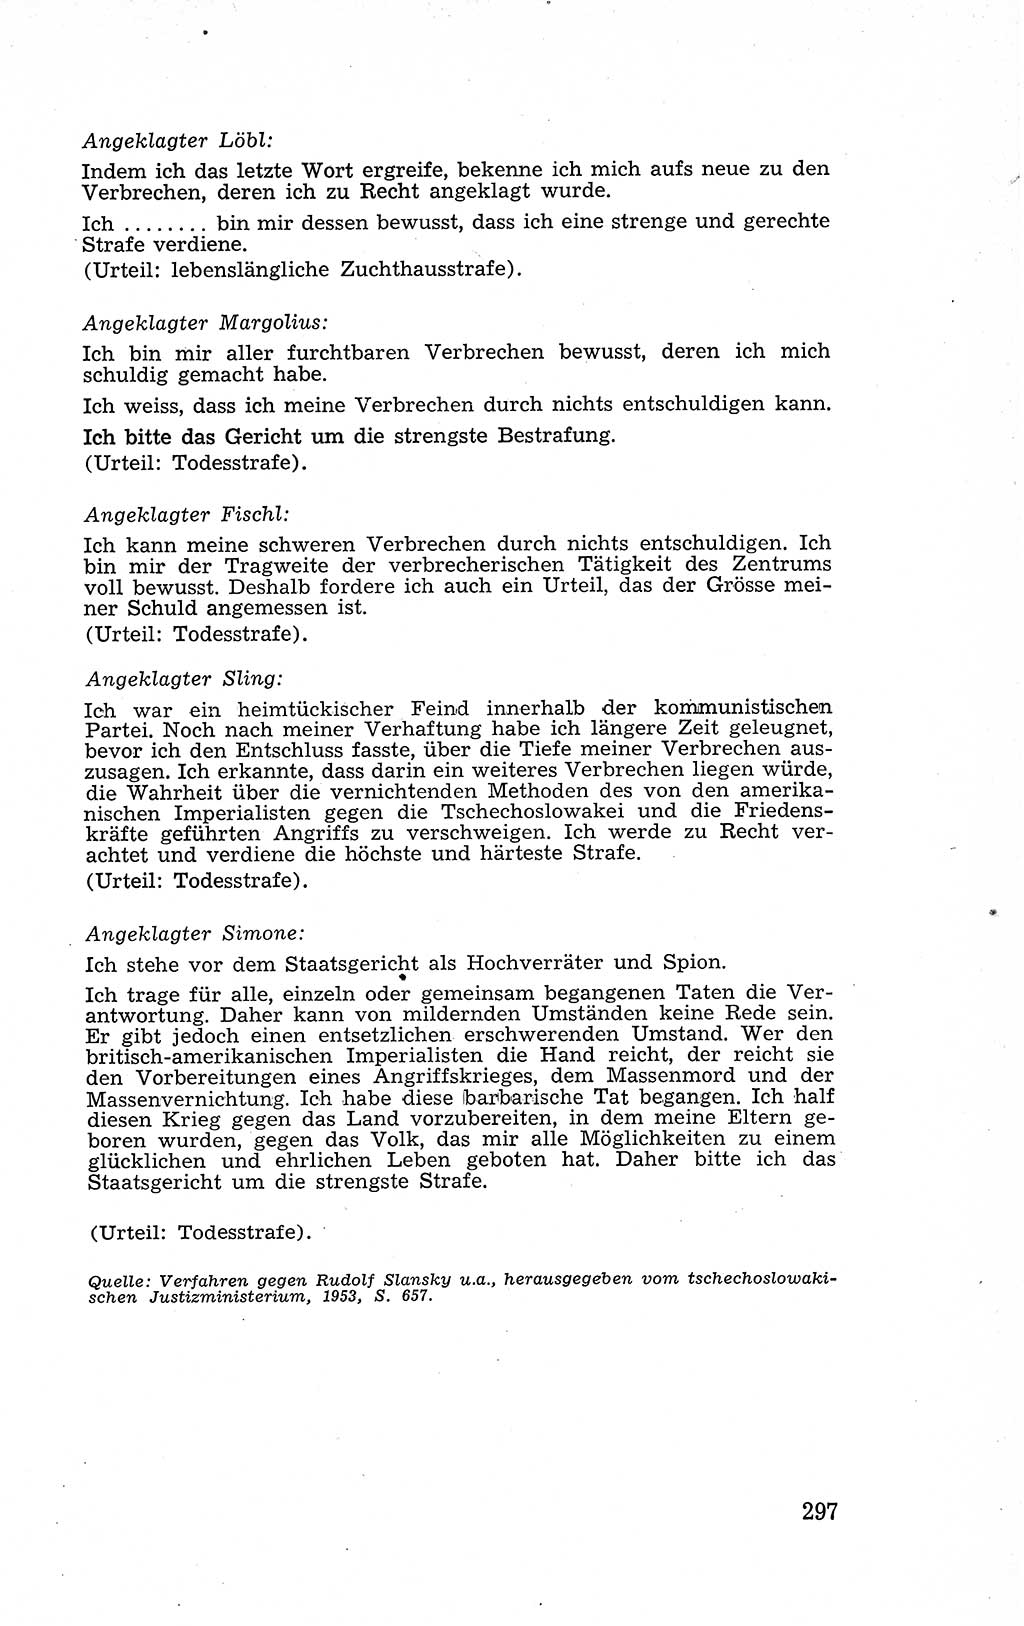 Recht in Fesseln, Dokumente, Internationale Juristen-Kommission [Bundesrepublik Deutschland (BRD)] 1955, Seite 297 (R. Dok. IJK BRD 1955, S. 297)